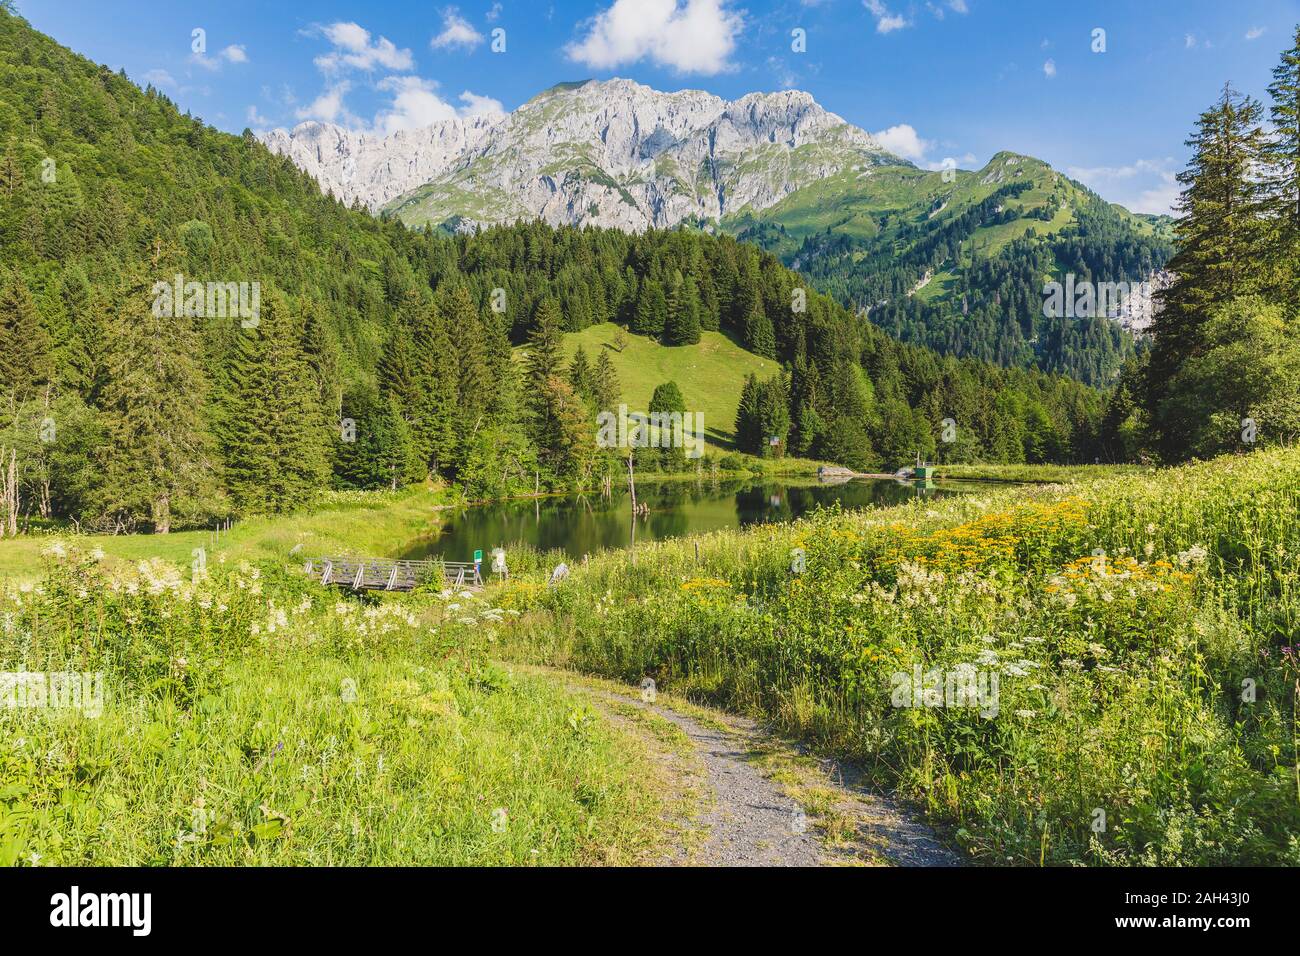 Austria, Carinzia, vista panoramica del lago nella valle boscosa di le Alpi Carniche in estate Foto Stock